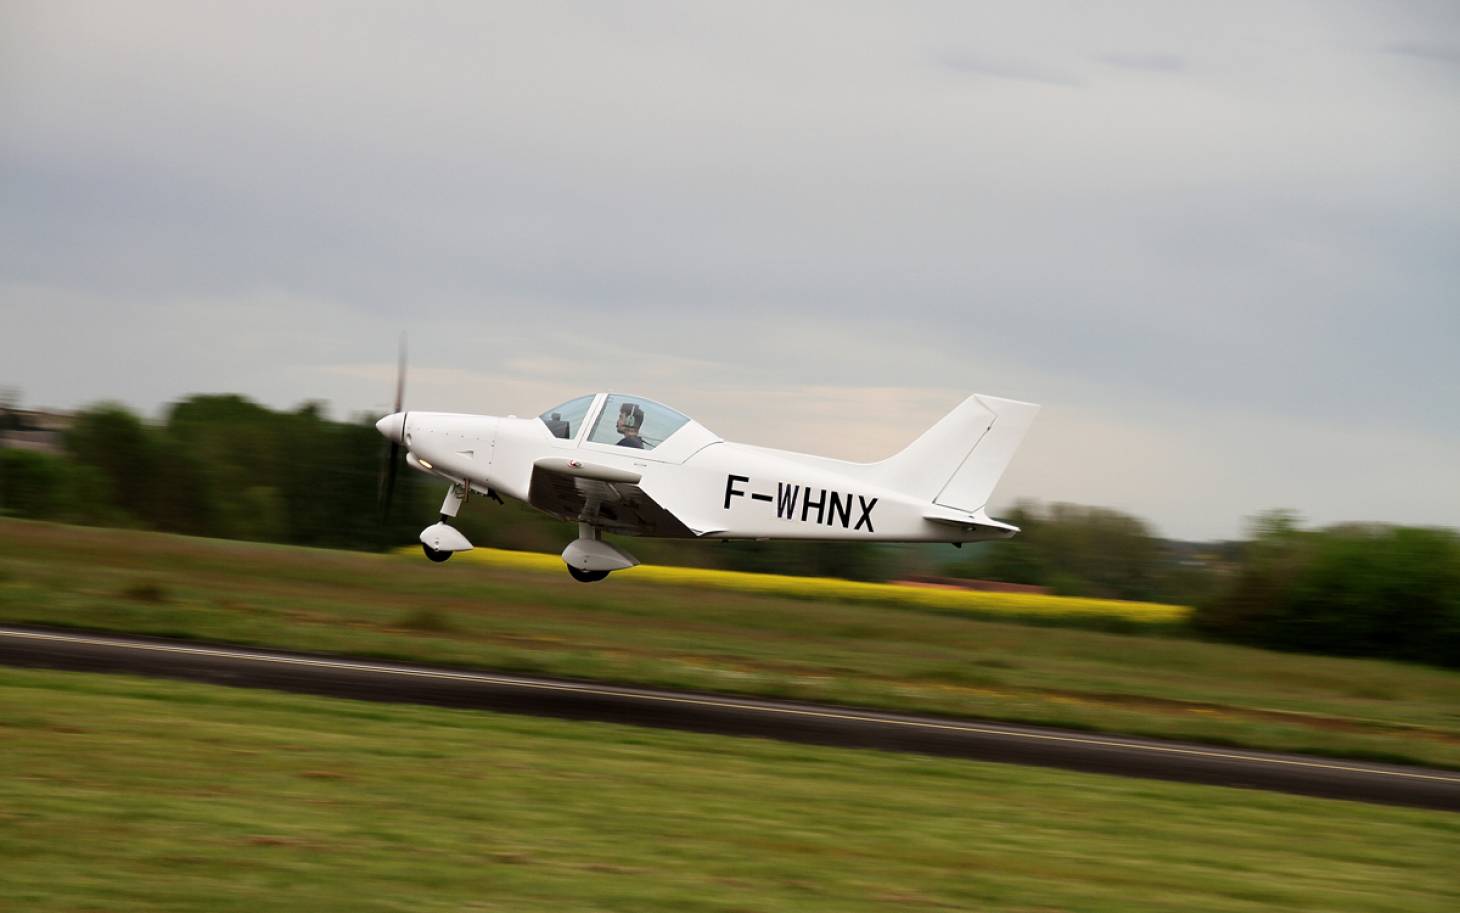 Ensma/Le projet de l'année - Le P300 a décollé